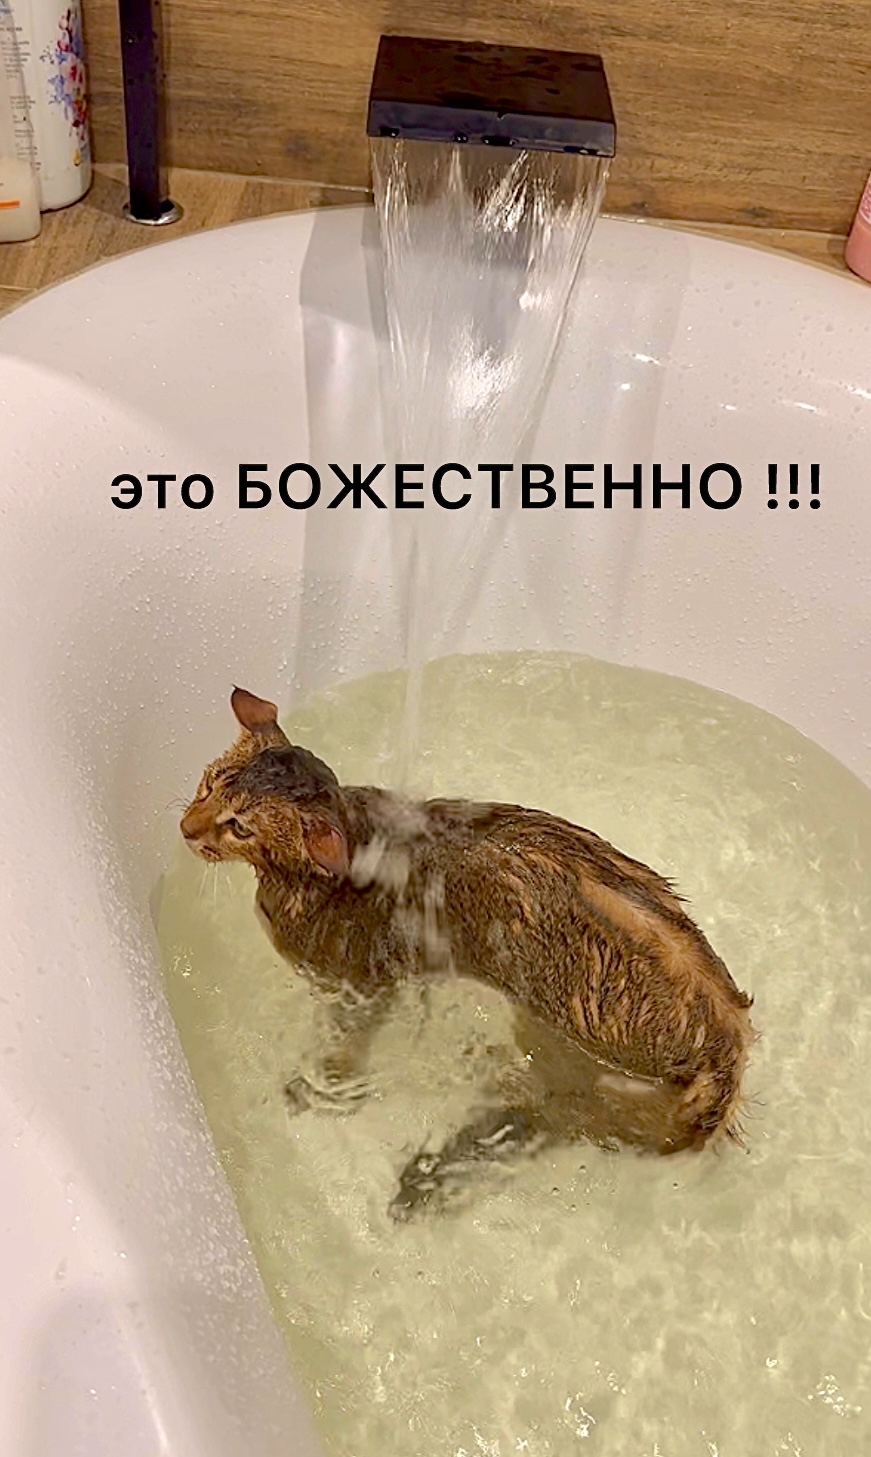 Кот чаузи балдеет в ванной под водопадом 😻